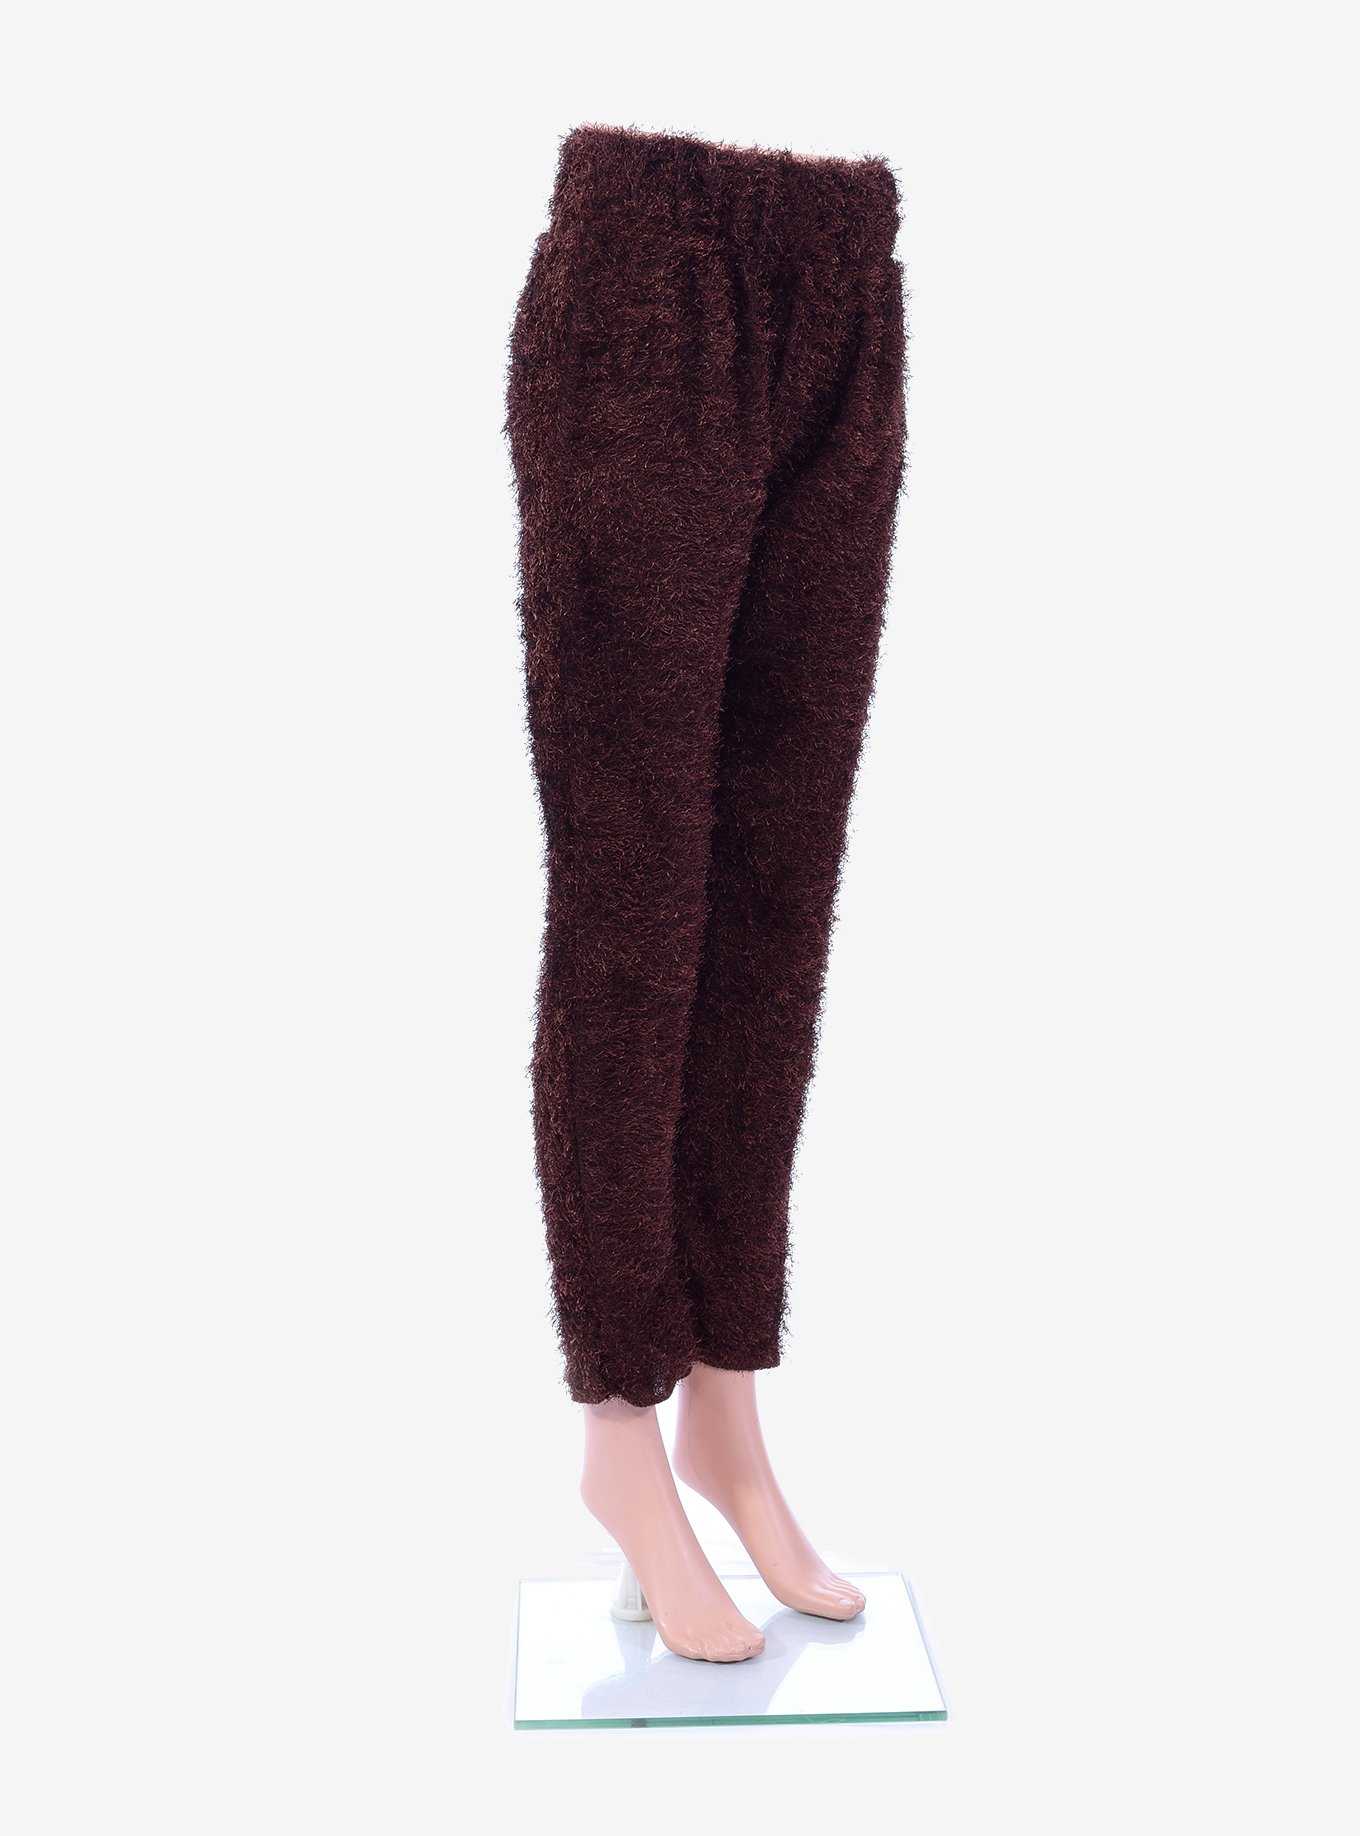 Furry Brown Costume Leggings, , hi-res